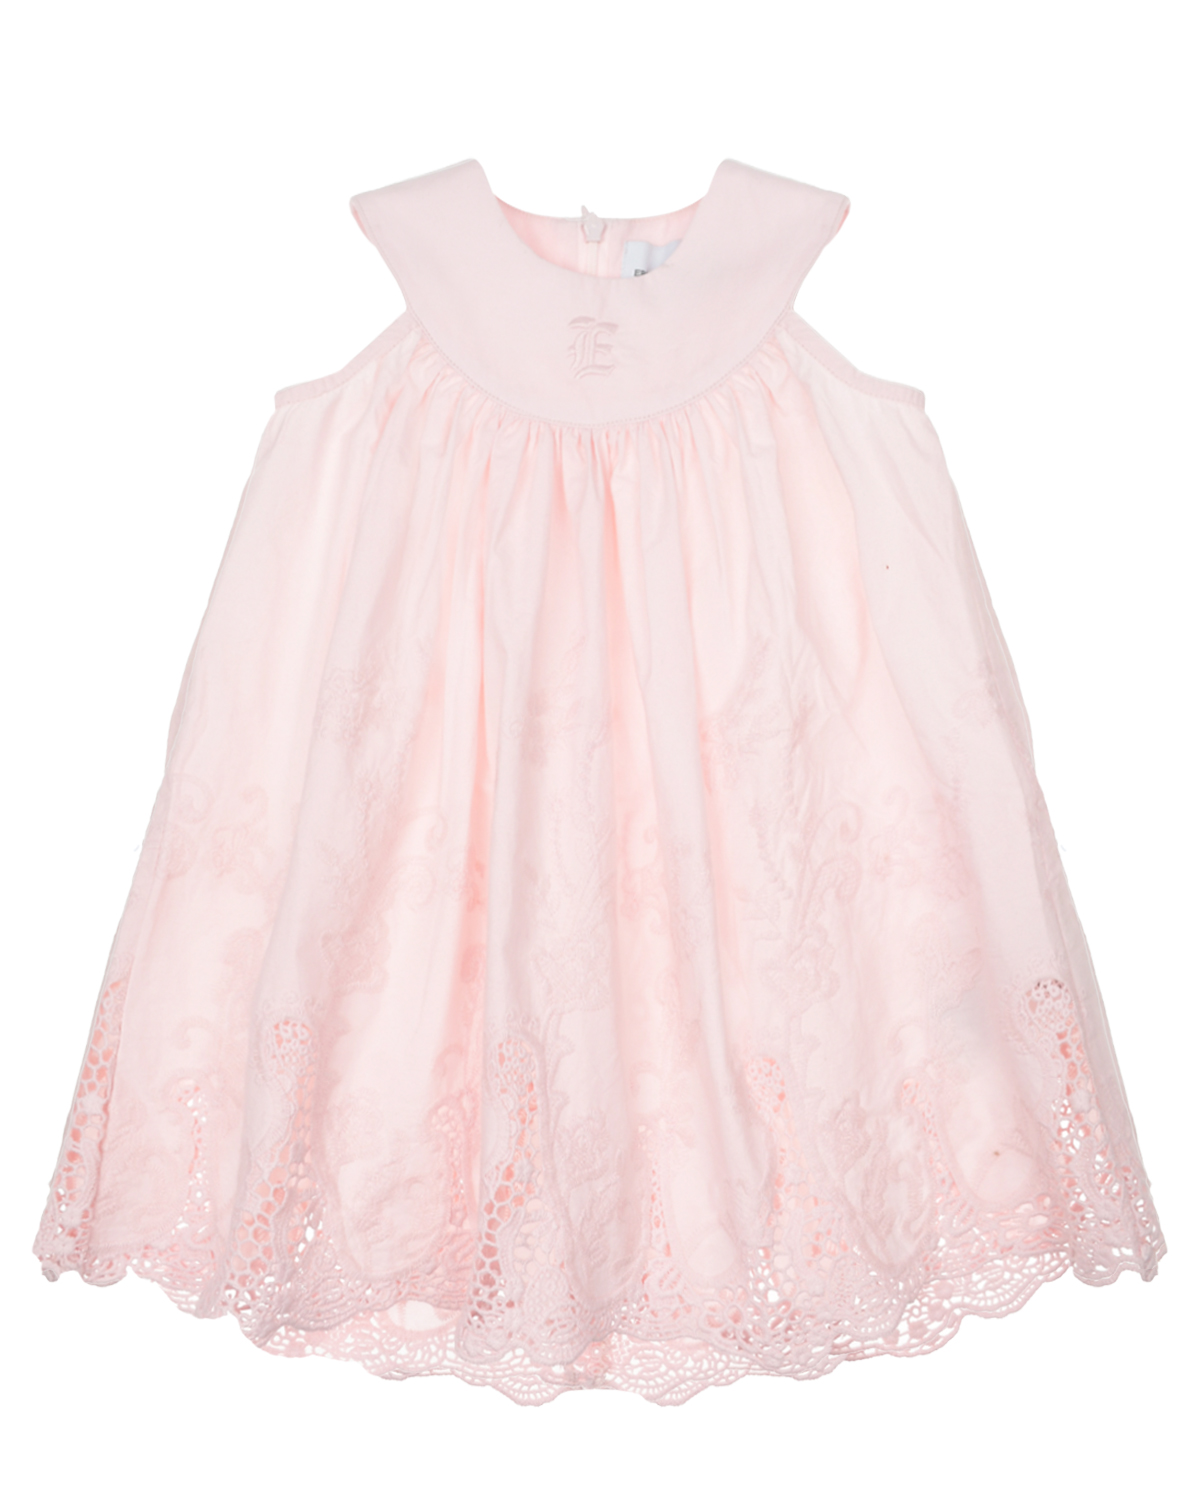 Розовое платье с ажурной вышивкой Ermanno Scervino платье для собак кулирка xs дс 24 ош 32 36 ог 34 38 розовое с серыми полосками